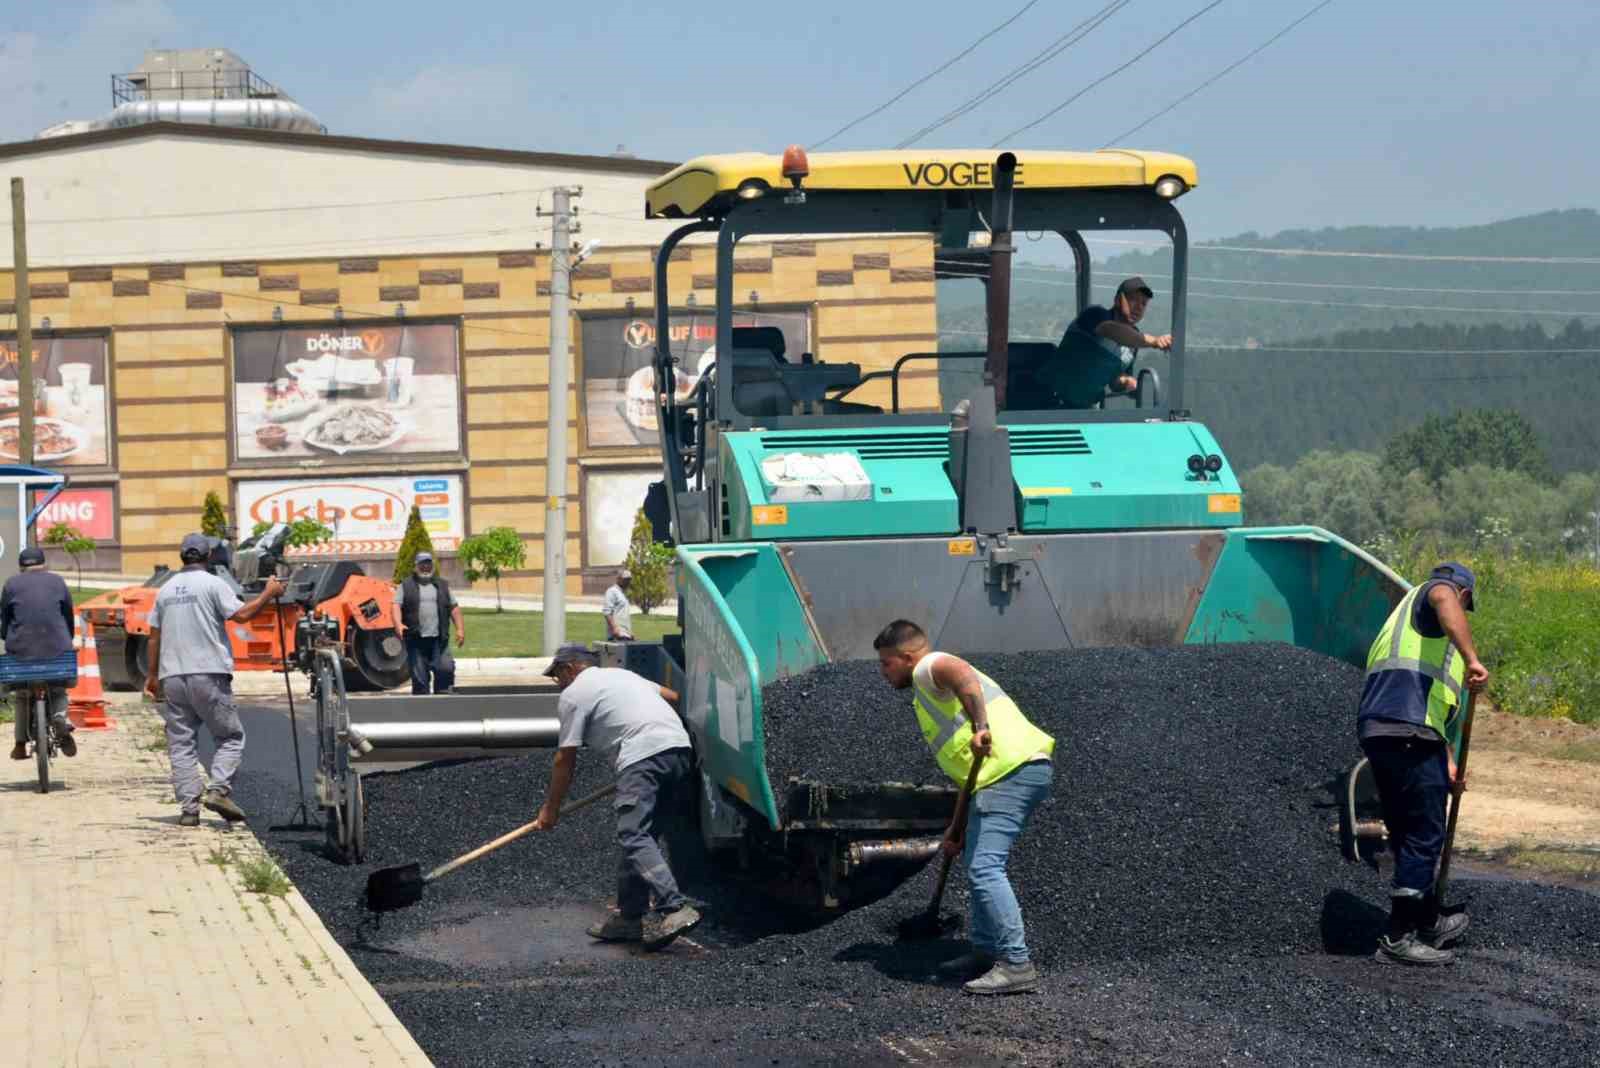 Başkan Bakkalcıoğlu “asfalt çalışmalarını ihtiyaç görülen her yerde gece gündüz sürdüreceğiz”